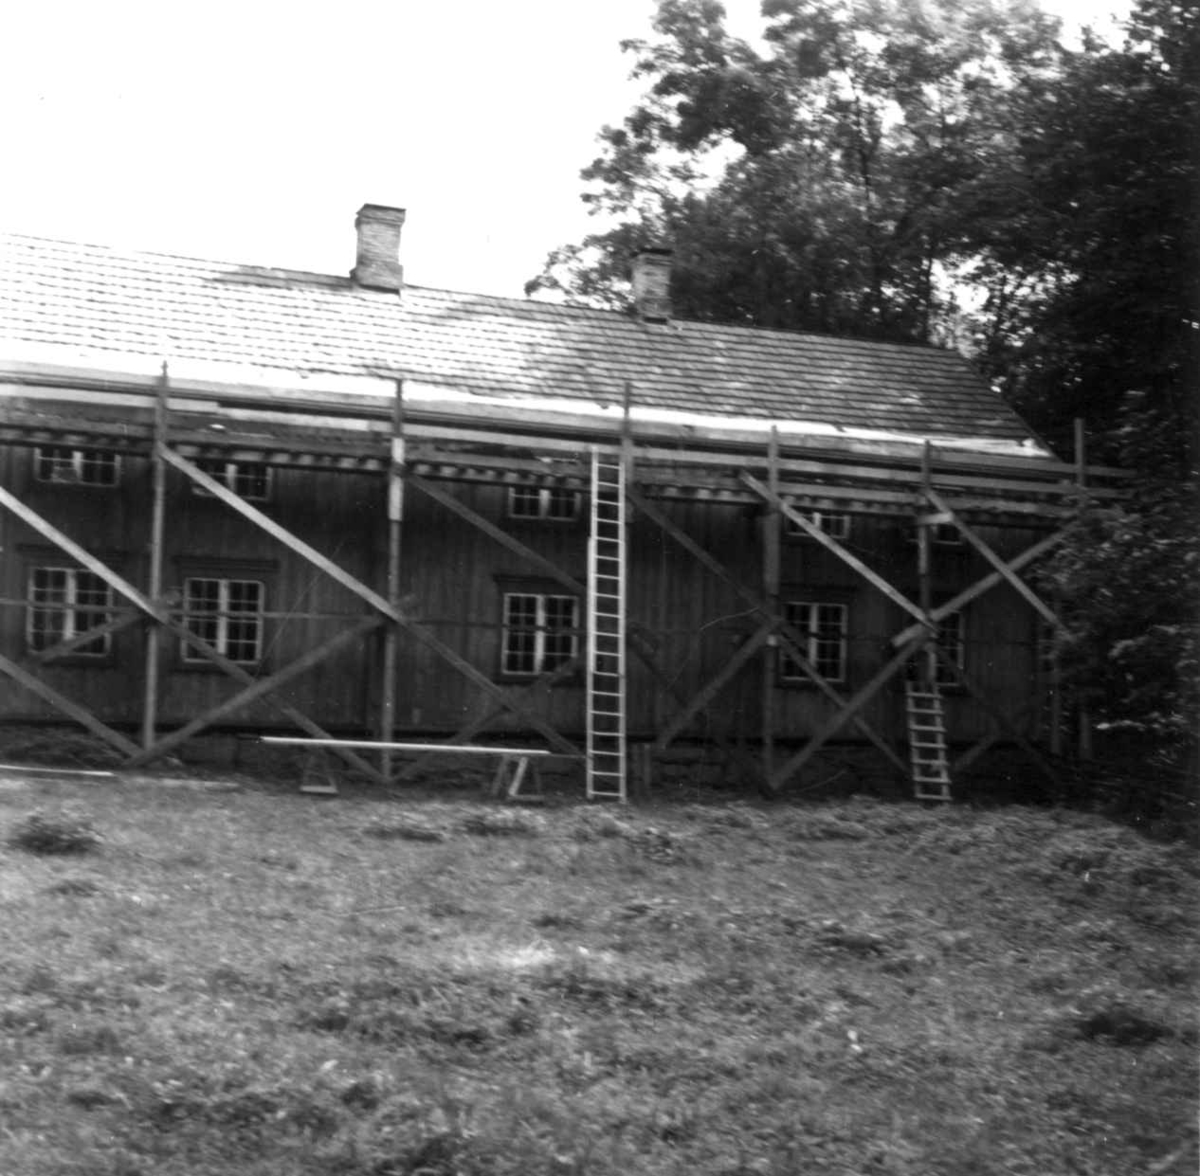 Hovedbygning fra Stiklestad Vestre, Verdal i Nord-Trøndelag ("lånna"). Reparasjon av tak, kant. Fotografert av Arne Berg, august 1979.